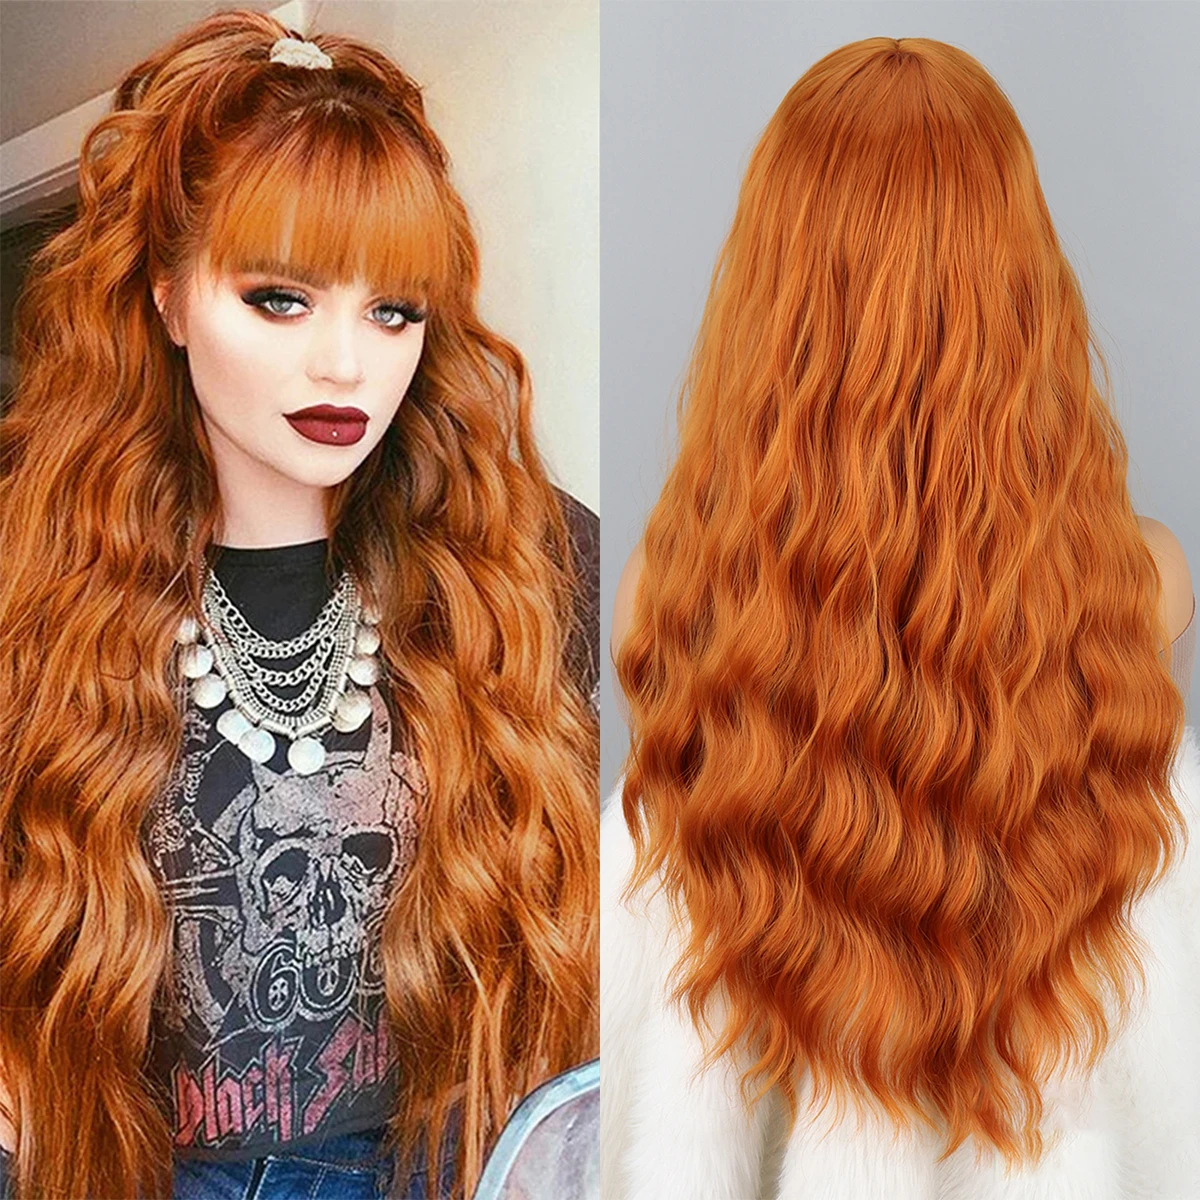 Длинный оранжевый парик с челкой, волнистые локоны, челка, синтетический женский оранжевый длинный парик естественного вида, подходящий для повседневной